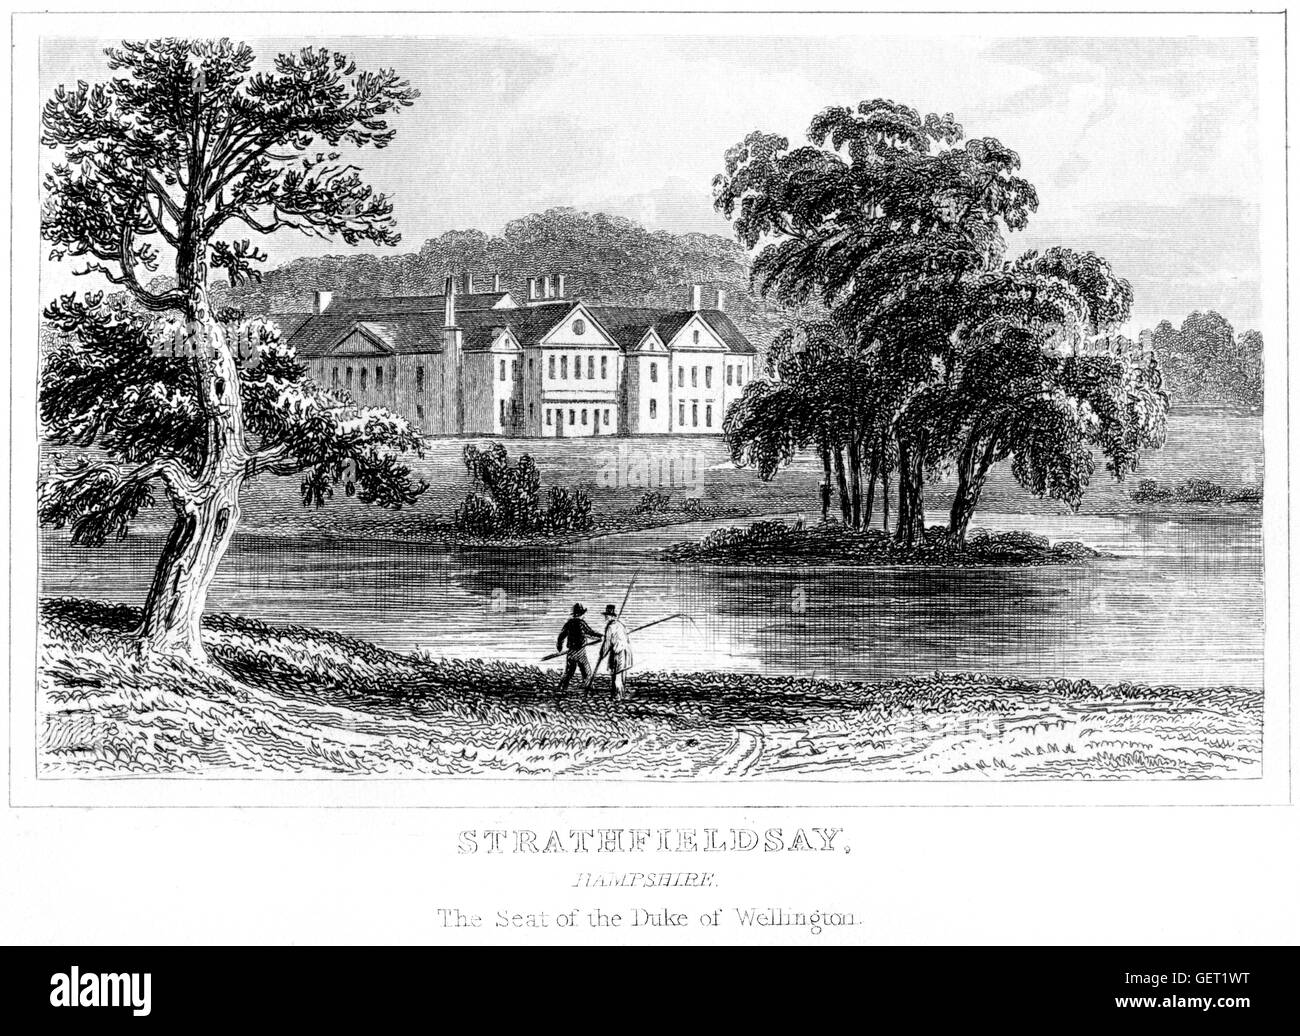 Una incisione di Strathfieldsay, Hampshire. La sede del duca di Wellington scansionati ad alta res. Da un libro stampato nel 1846. Foto Stock